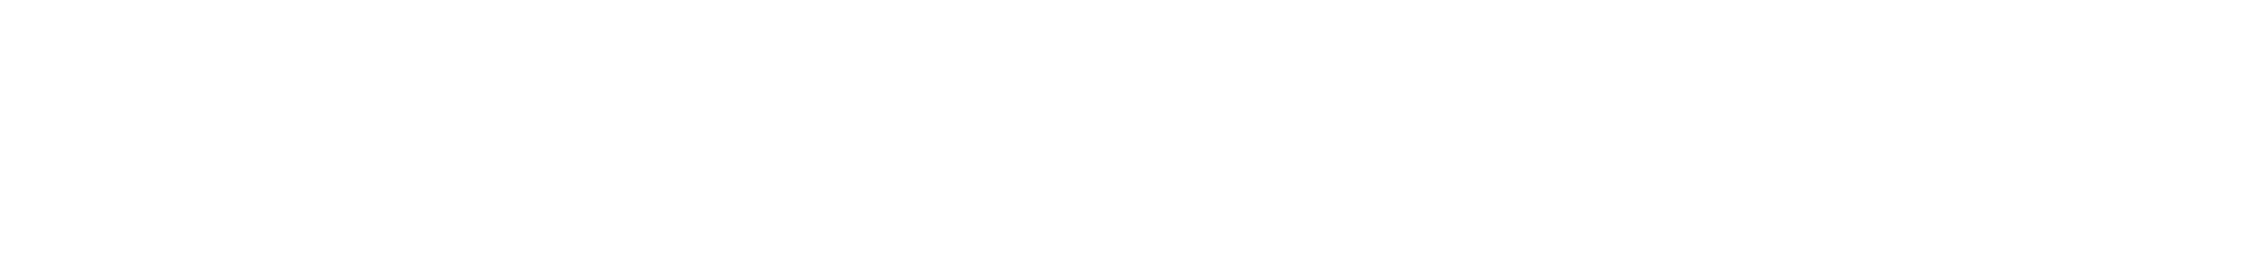 De blije merkontwikkelaar the goodplace logo